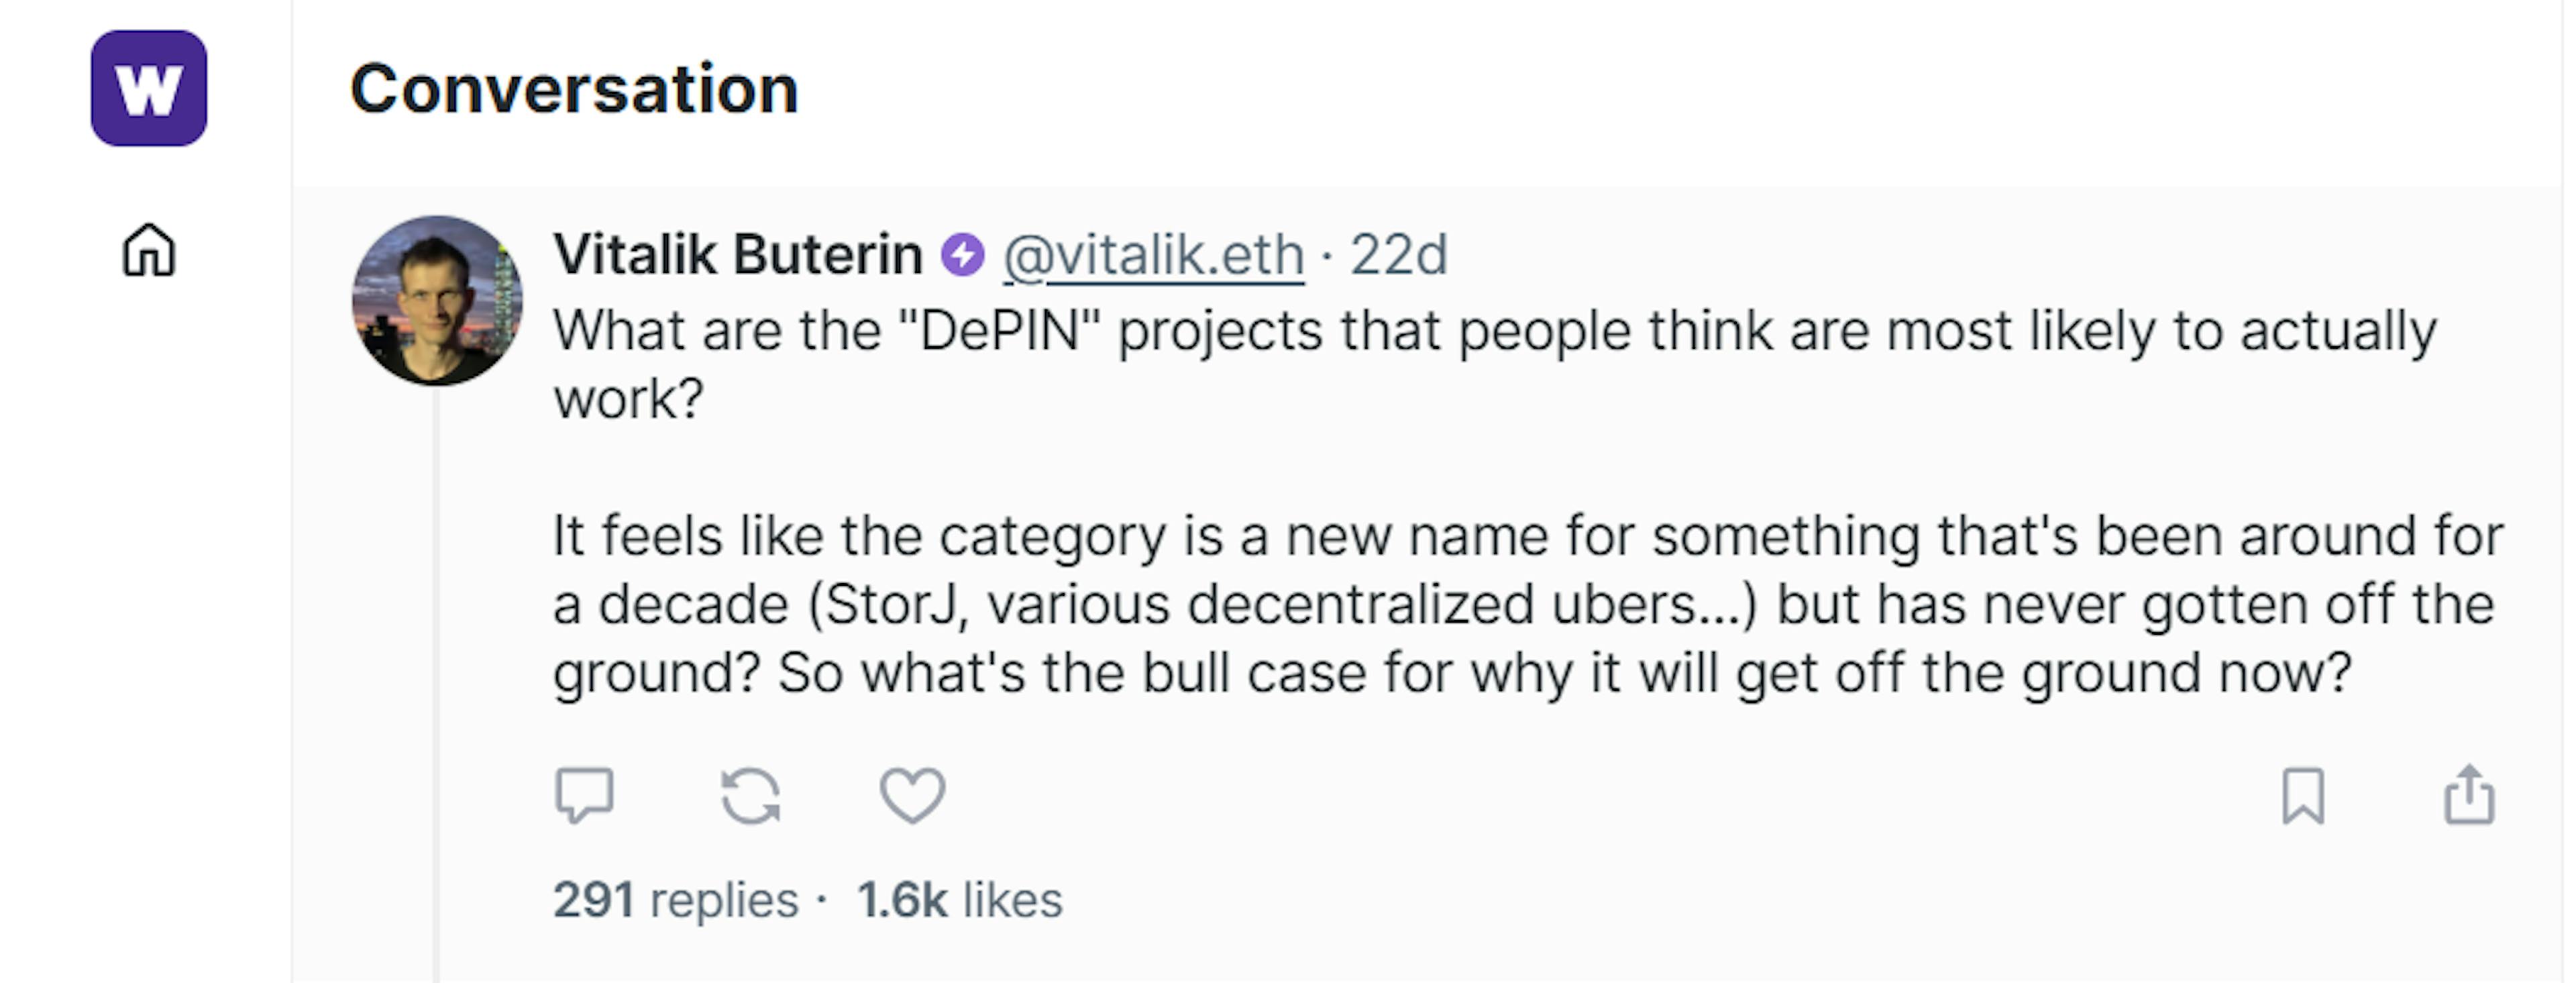 Vitalik Burterin 谈 DePin 项目